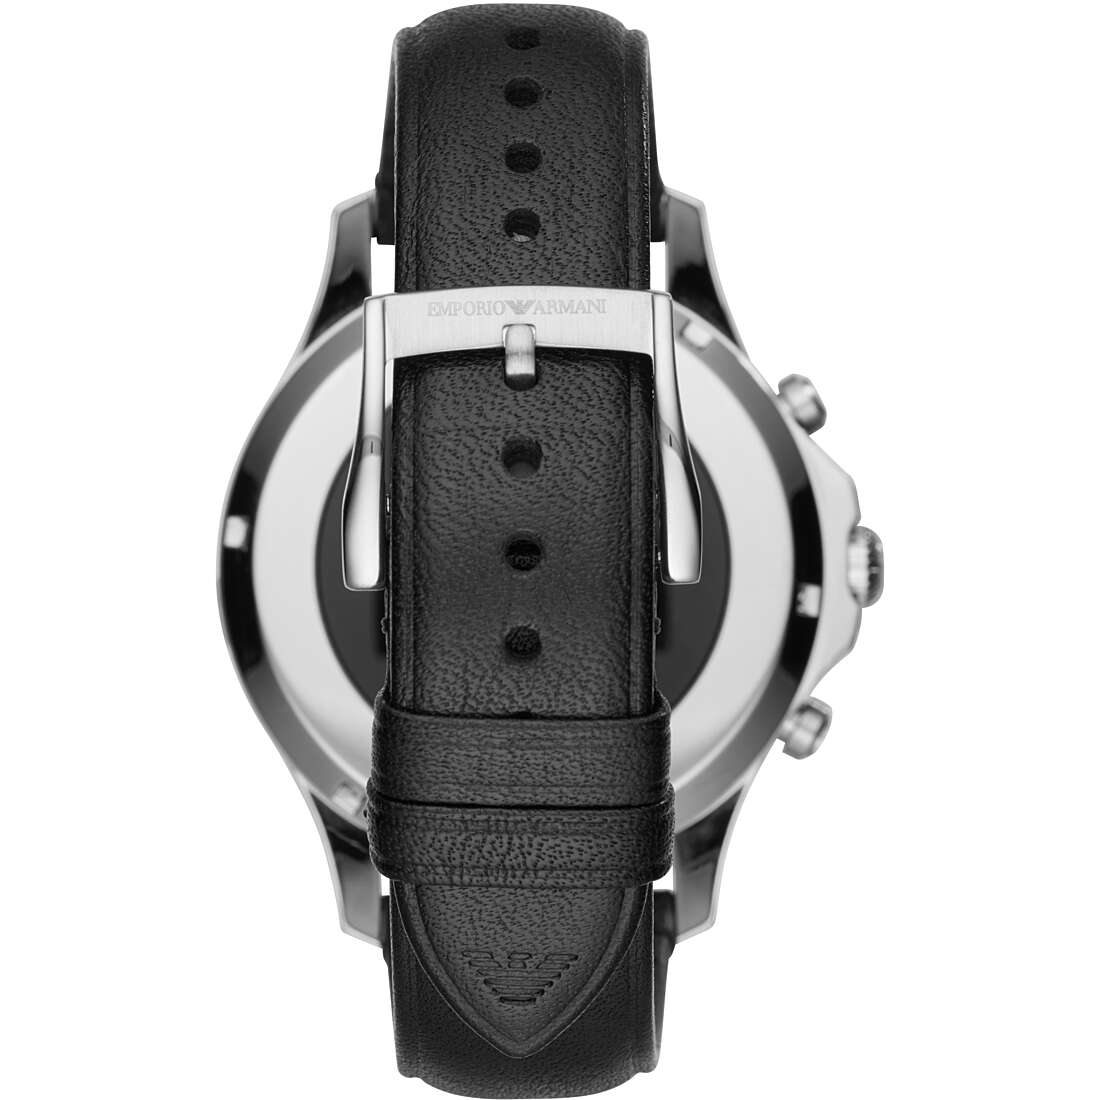 Uhr Smartwatch mann Emporio Armani ART5003